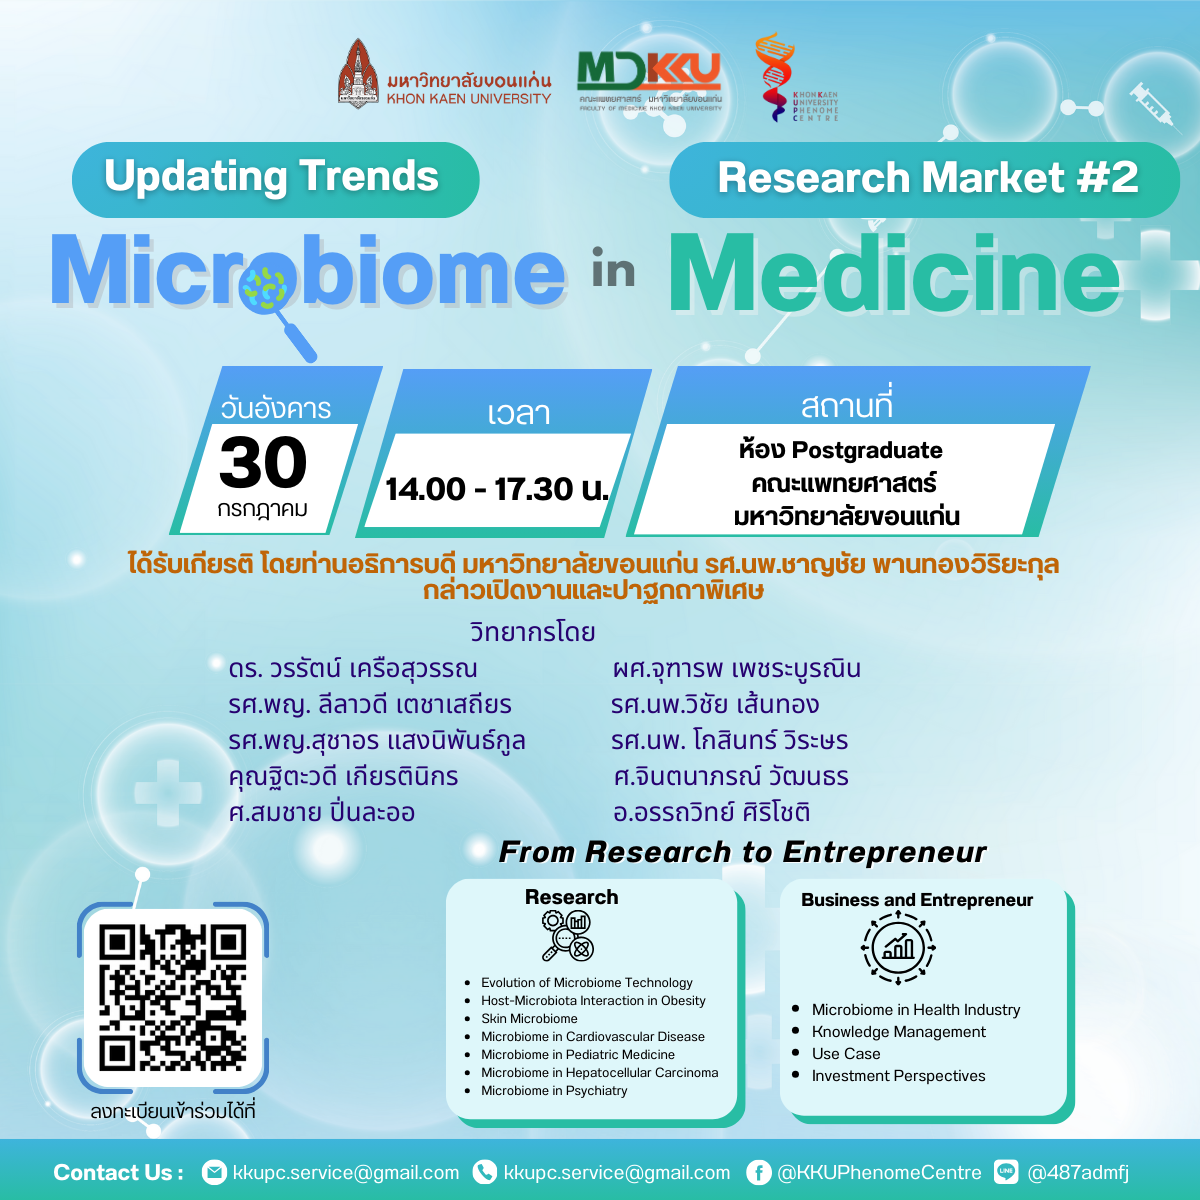 โครงการ Research Market “Microbiome in Medicine